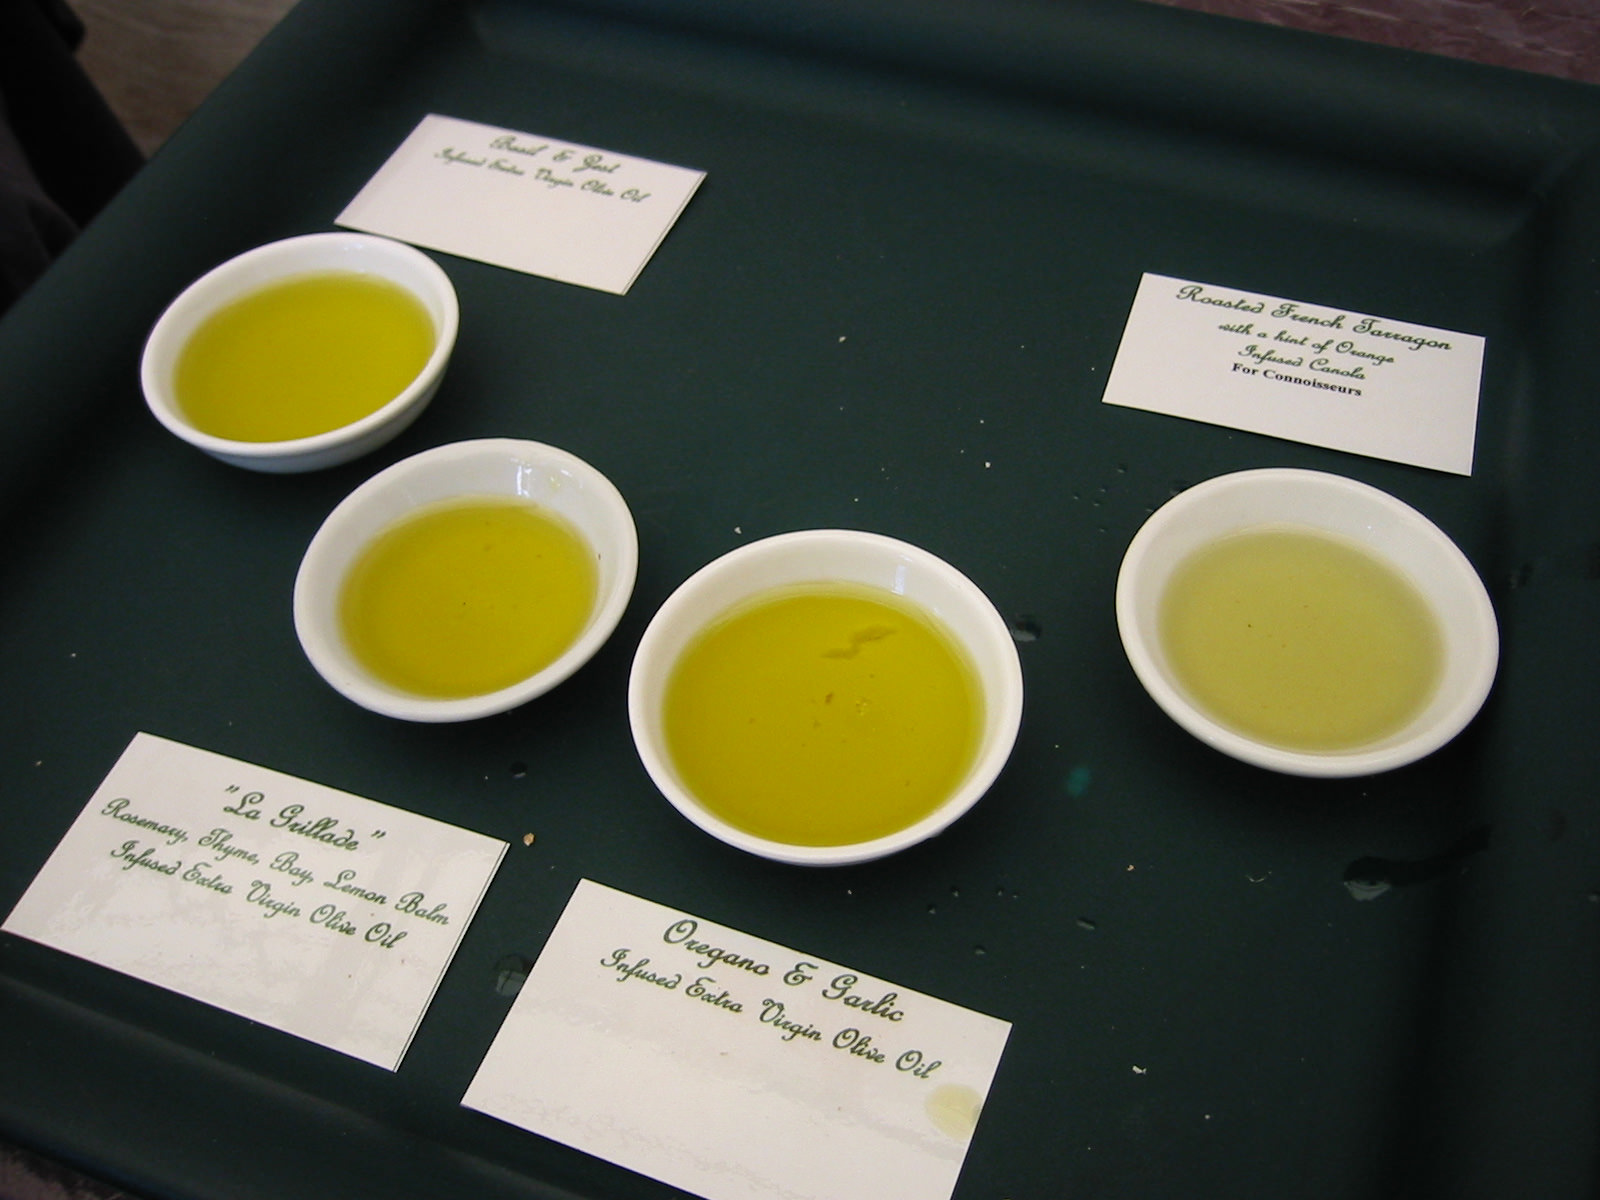 Oils for sampling